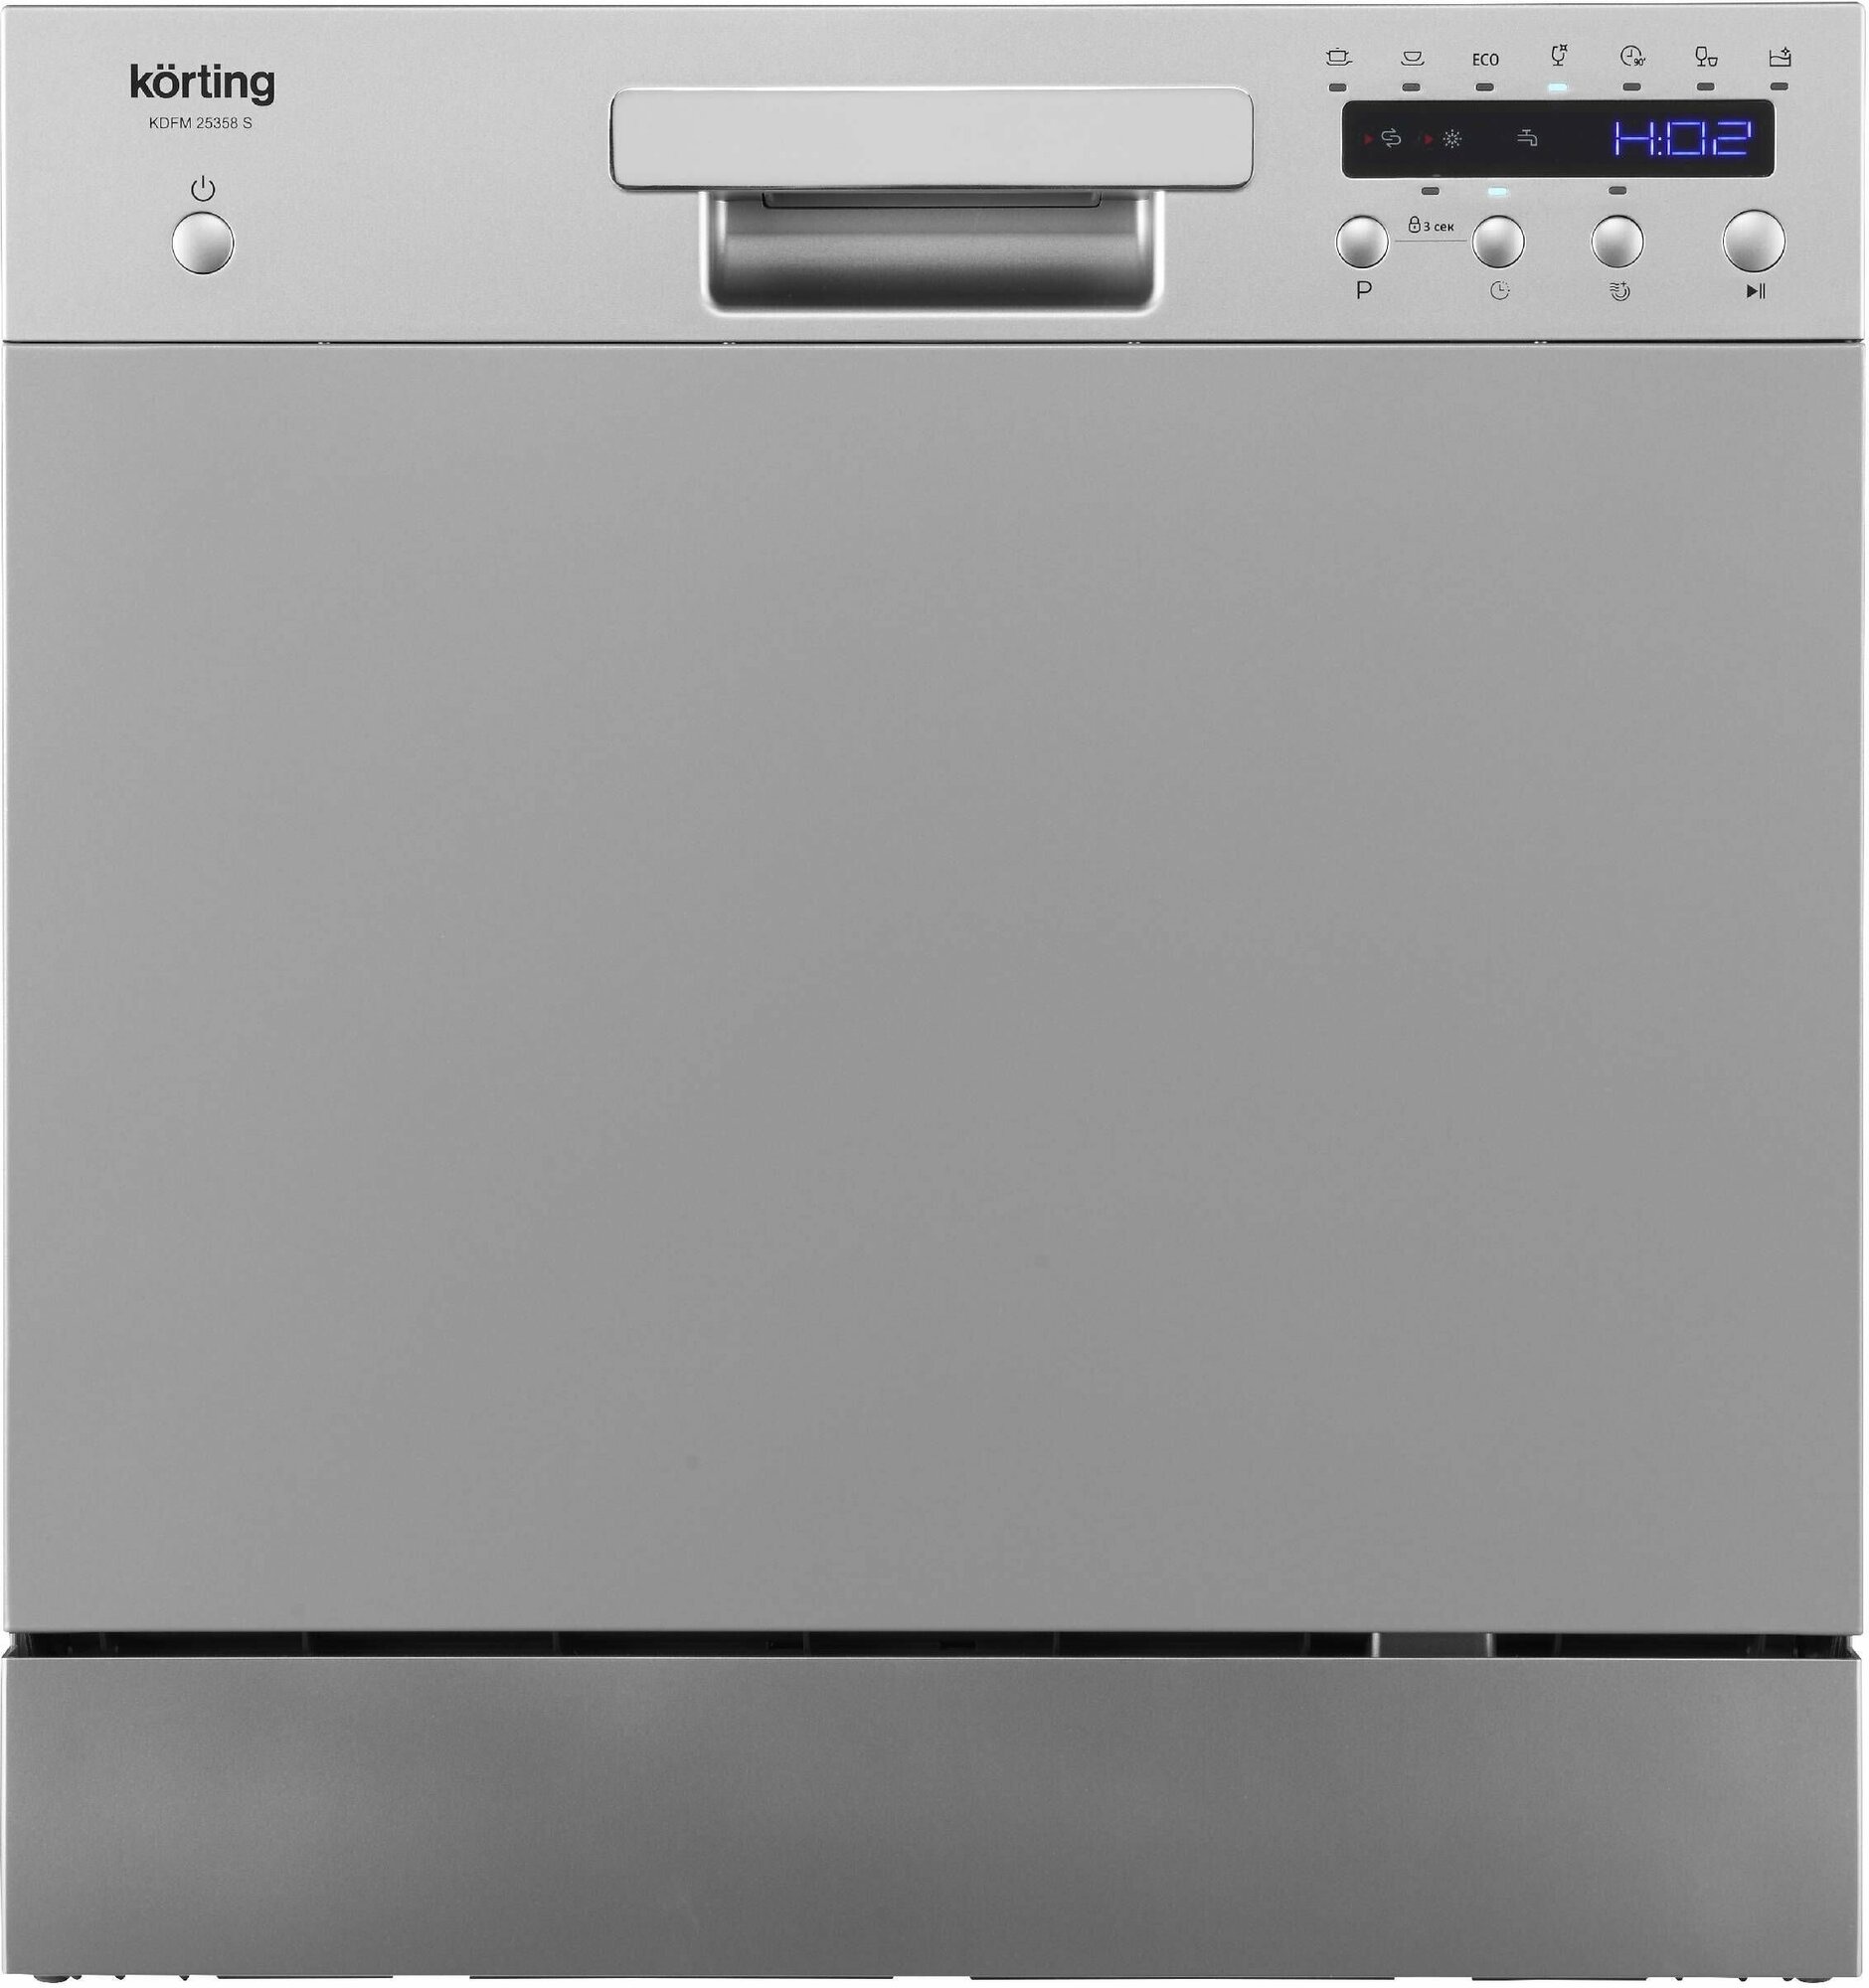 Посудомоечная машина KORTING KDFM 25358 S, серебристая, 7 программ, 8 комплектов, отложенный старт 24 ч, защита от протечек